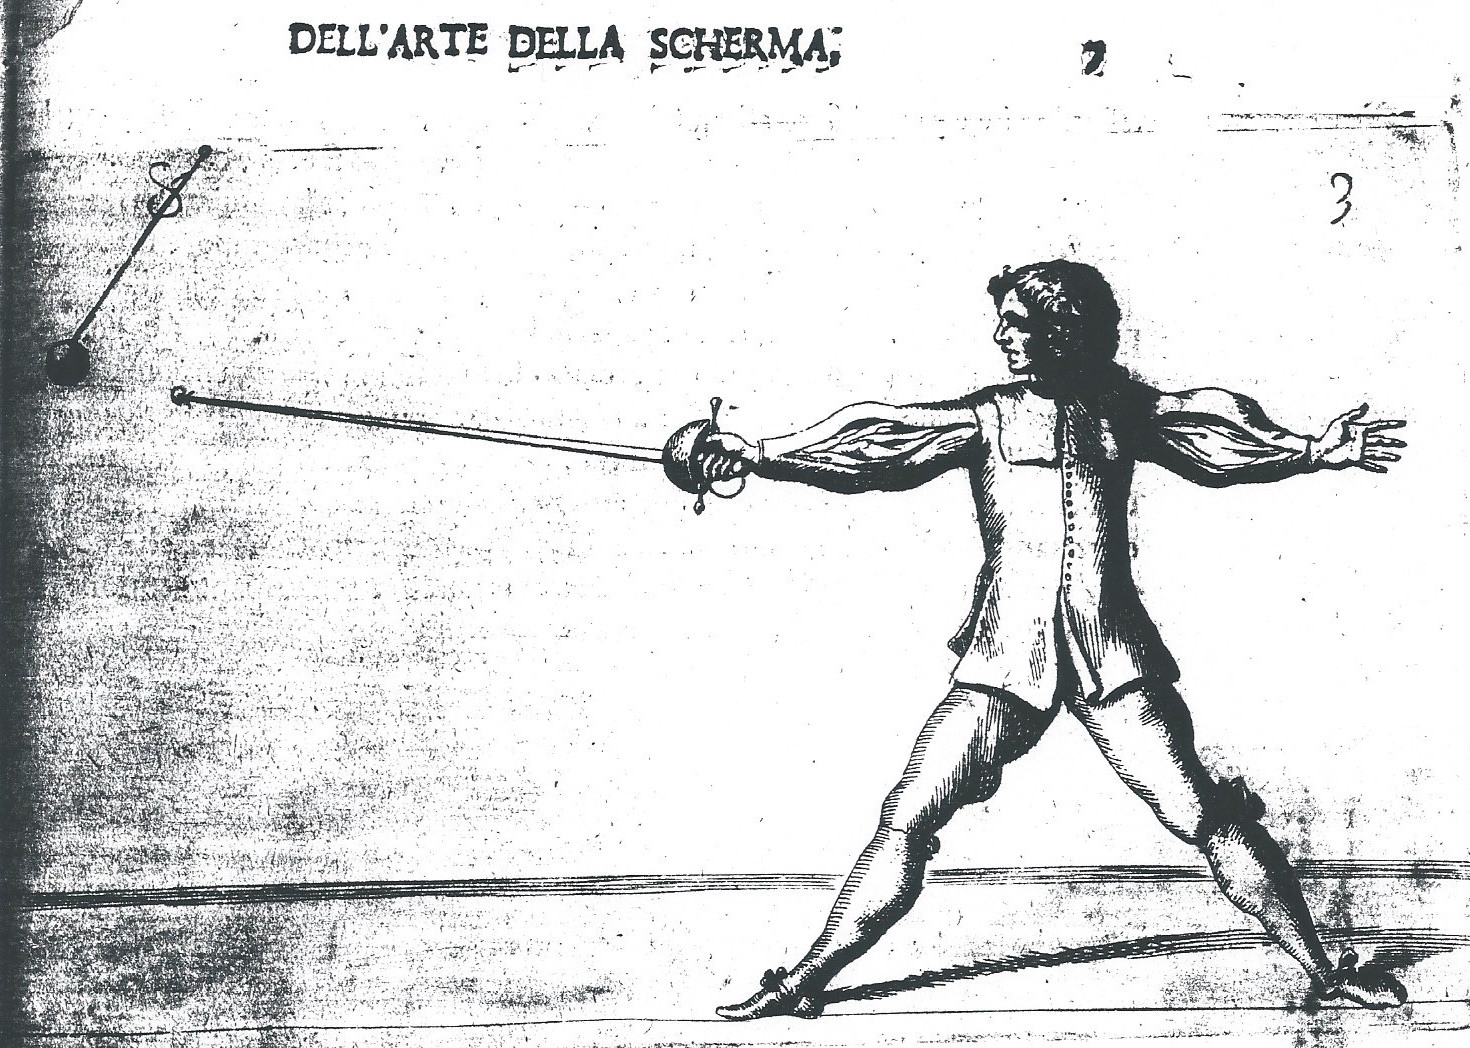 Fig. 6. Morsicato Pallavicini’s treatise of 1670, La Scherma Illustrata, depicting a cup-hilt practice Rapier/spada da marra/fioretto.